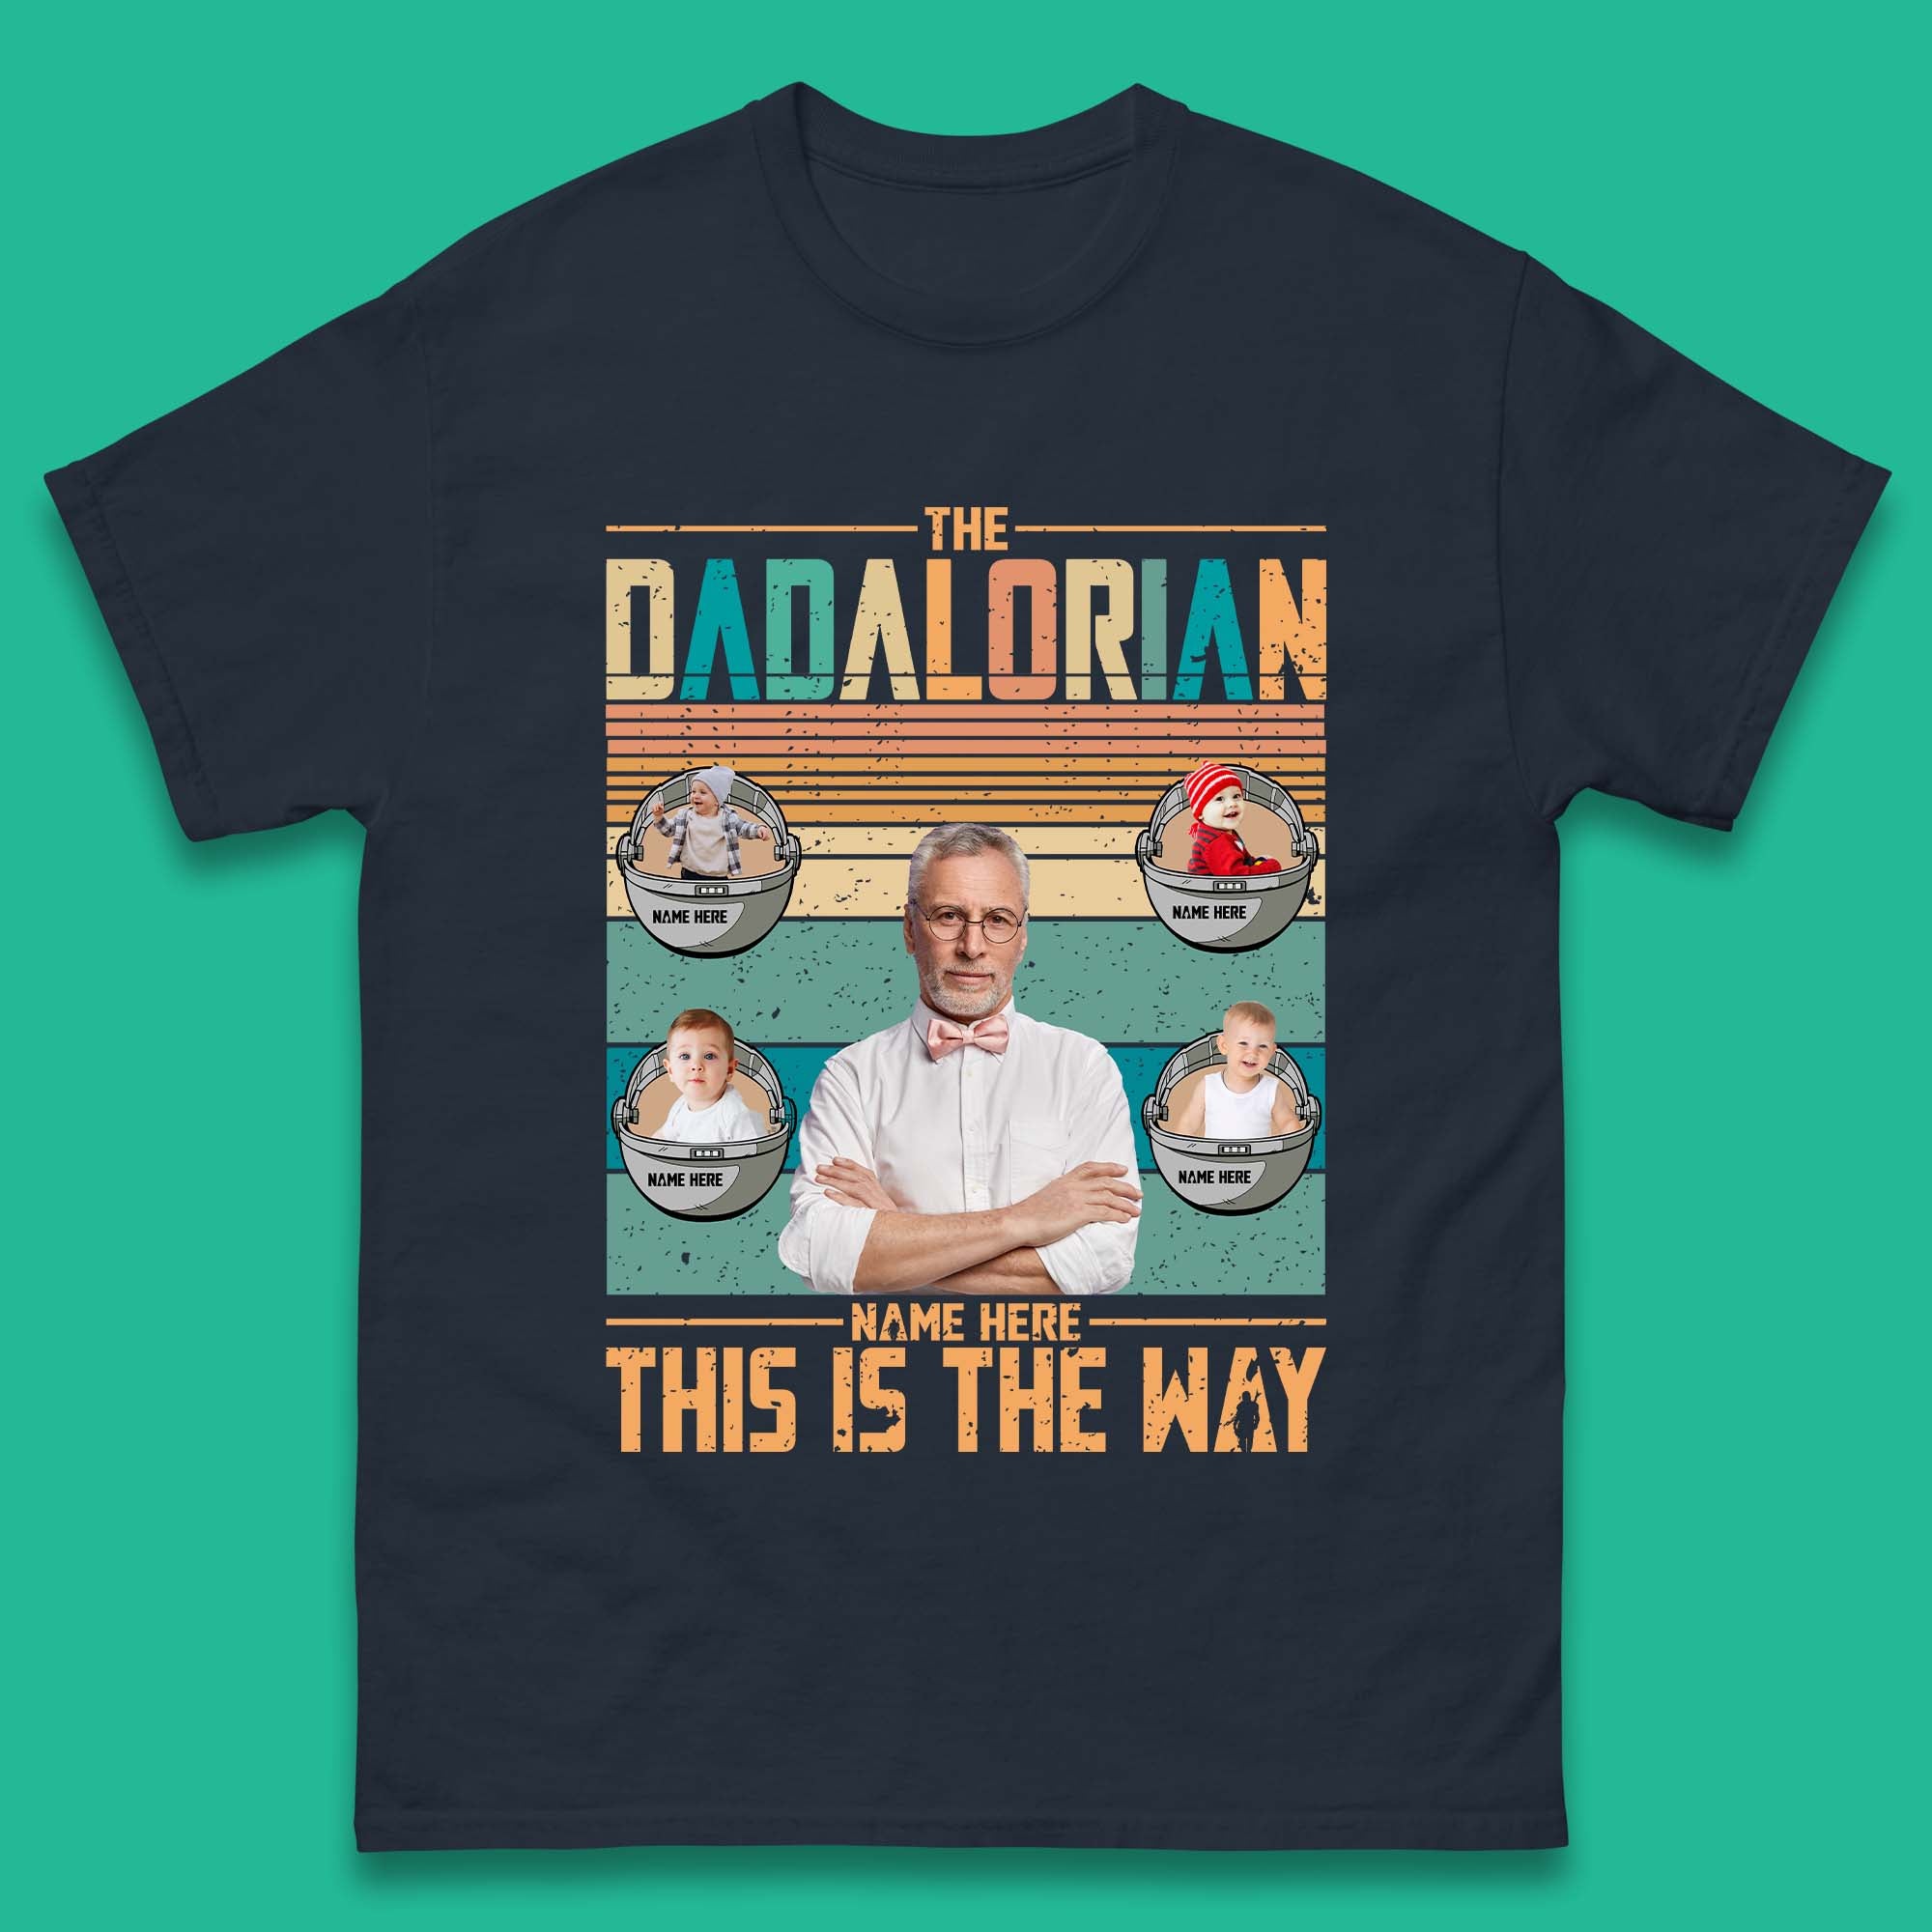 Personalised The Dadalorian Mens T-Shirt